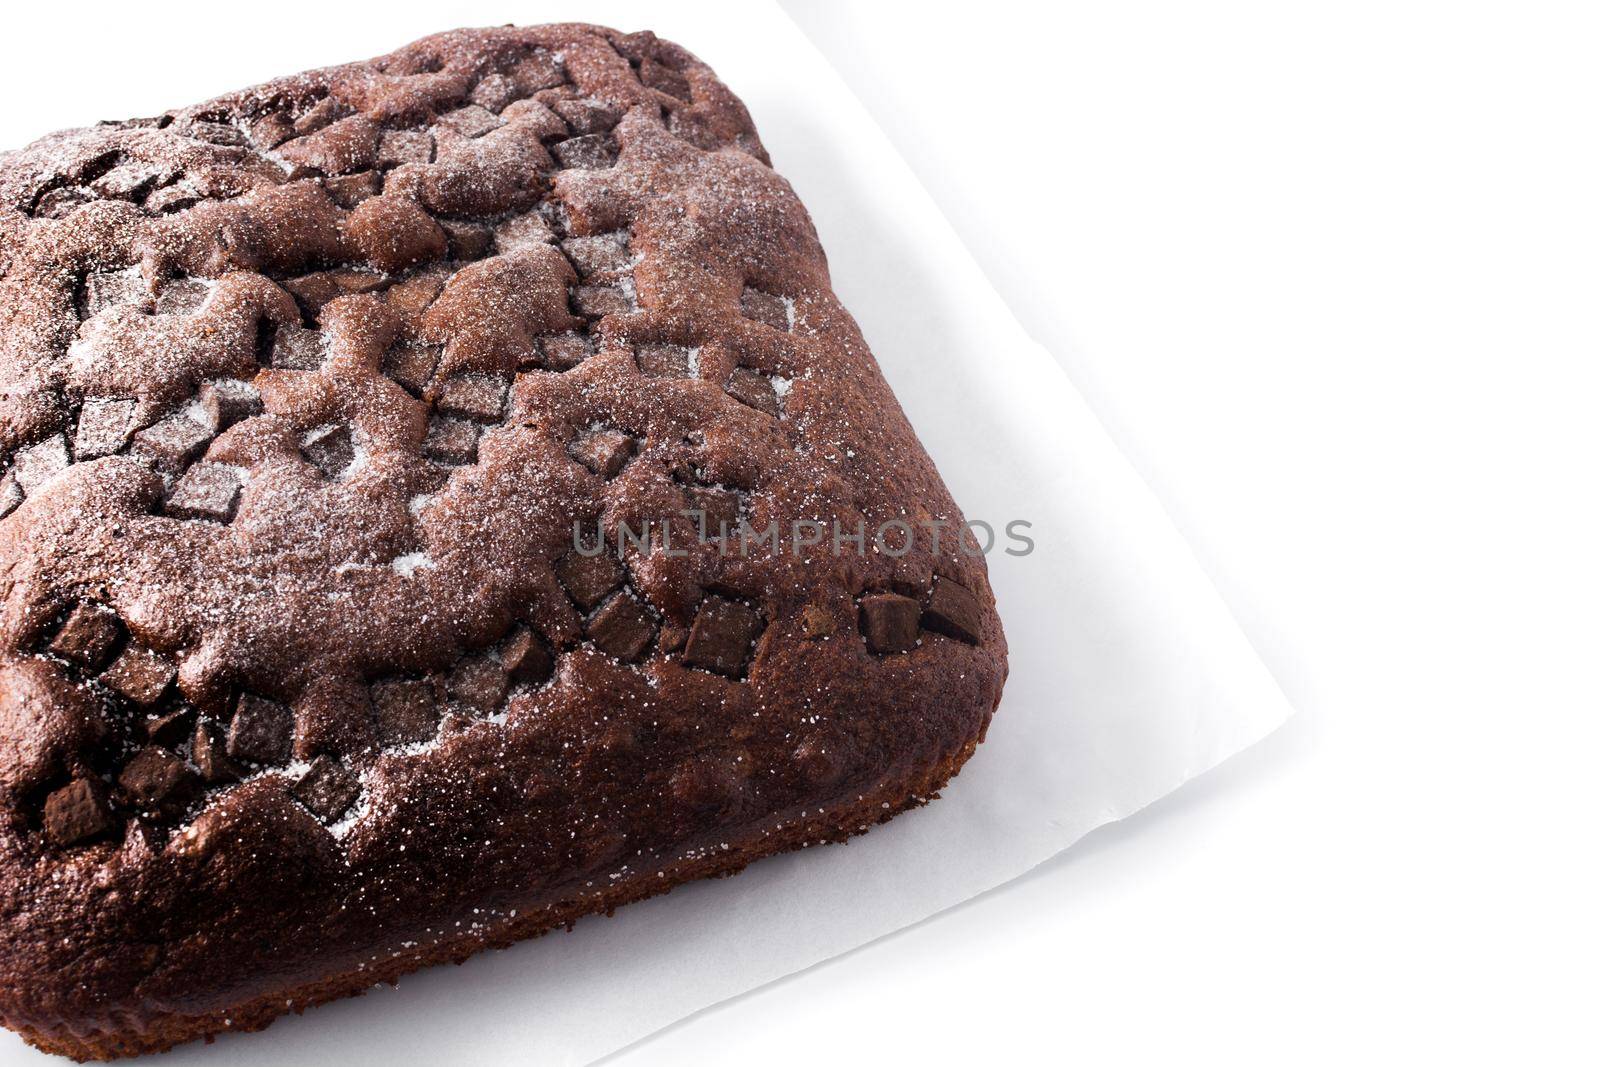 Sweet chocolate sponge cake isolated on white background